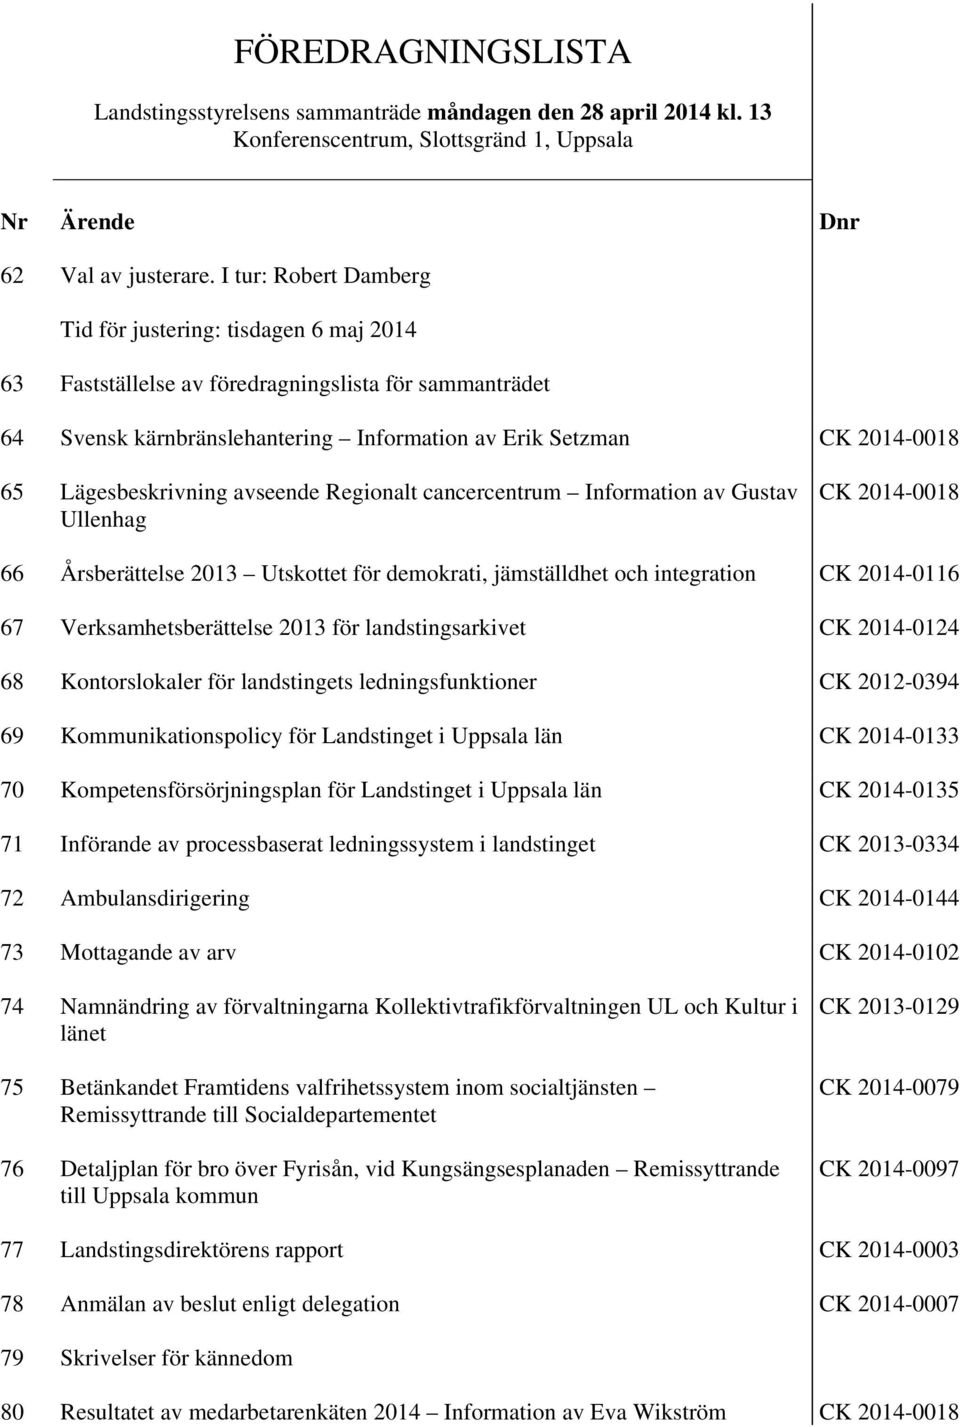 Lägesbeskrivning avseende Regionalt cancercentrum Information av Gustav Ullenhag CK 2014-0018 66 Årsberättelse 2013 Utskottet för demokrati, jämställdhet och integration CK 2014-0116 67